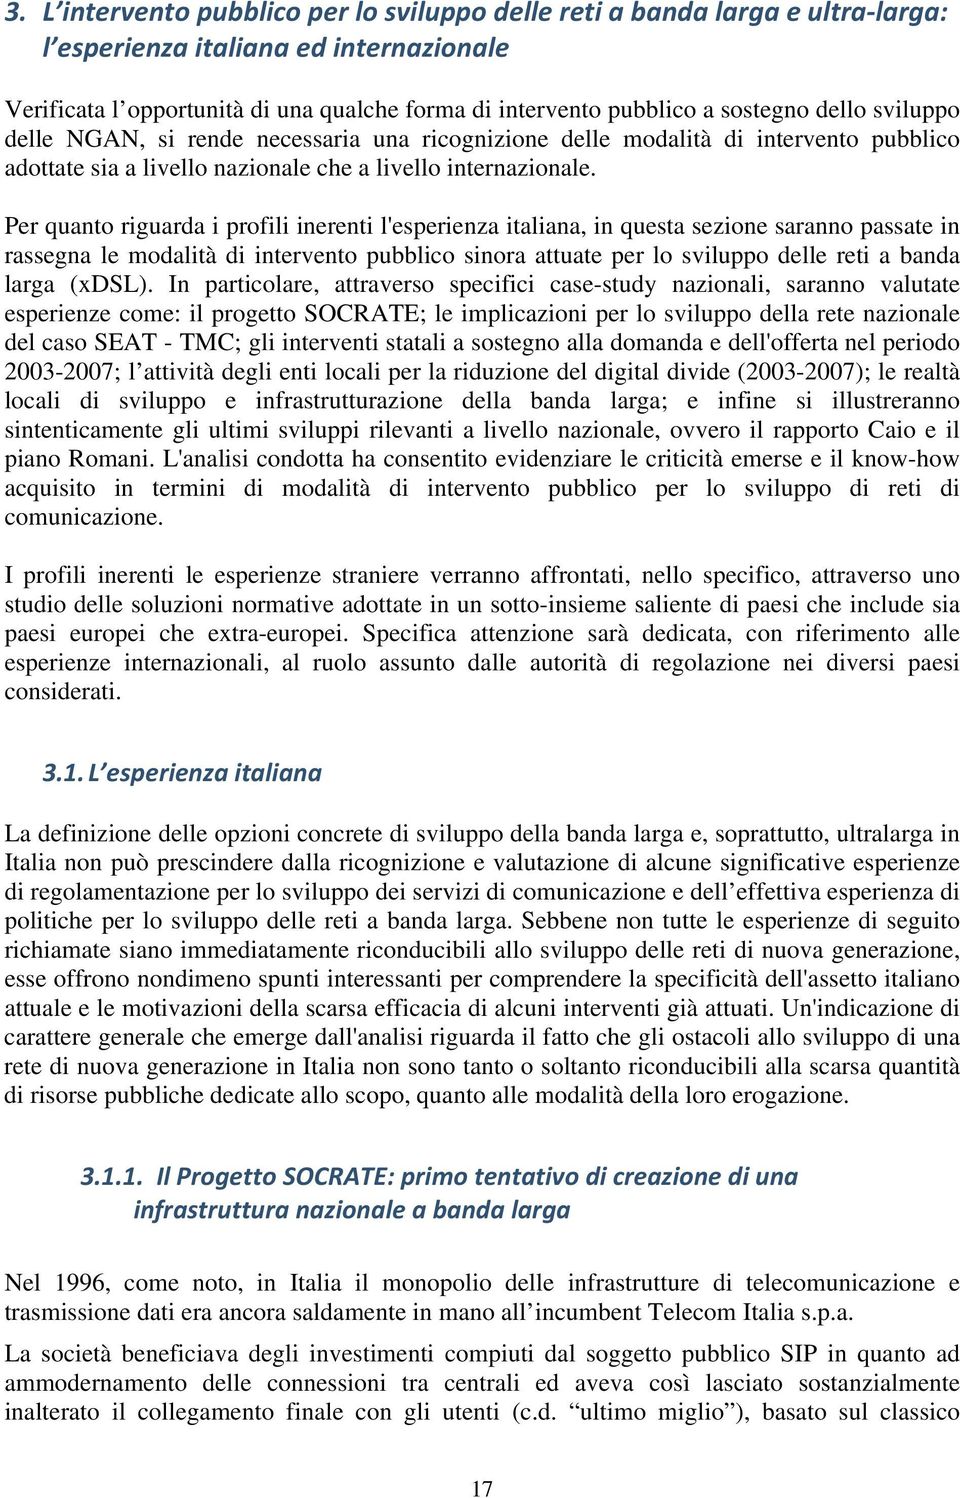 Per quanto riguarda i profili inerenti l'esperienza italiana, in questa sezione saranno passate in rassegna le modalità di intervento pubblico sinora attuate per lo sviluppo delle reti a banda larga